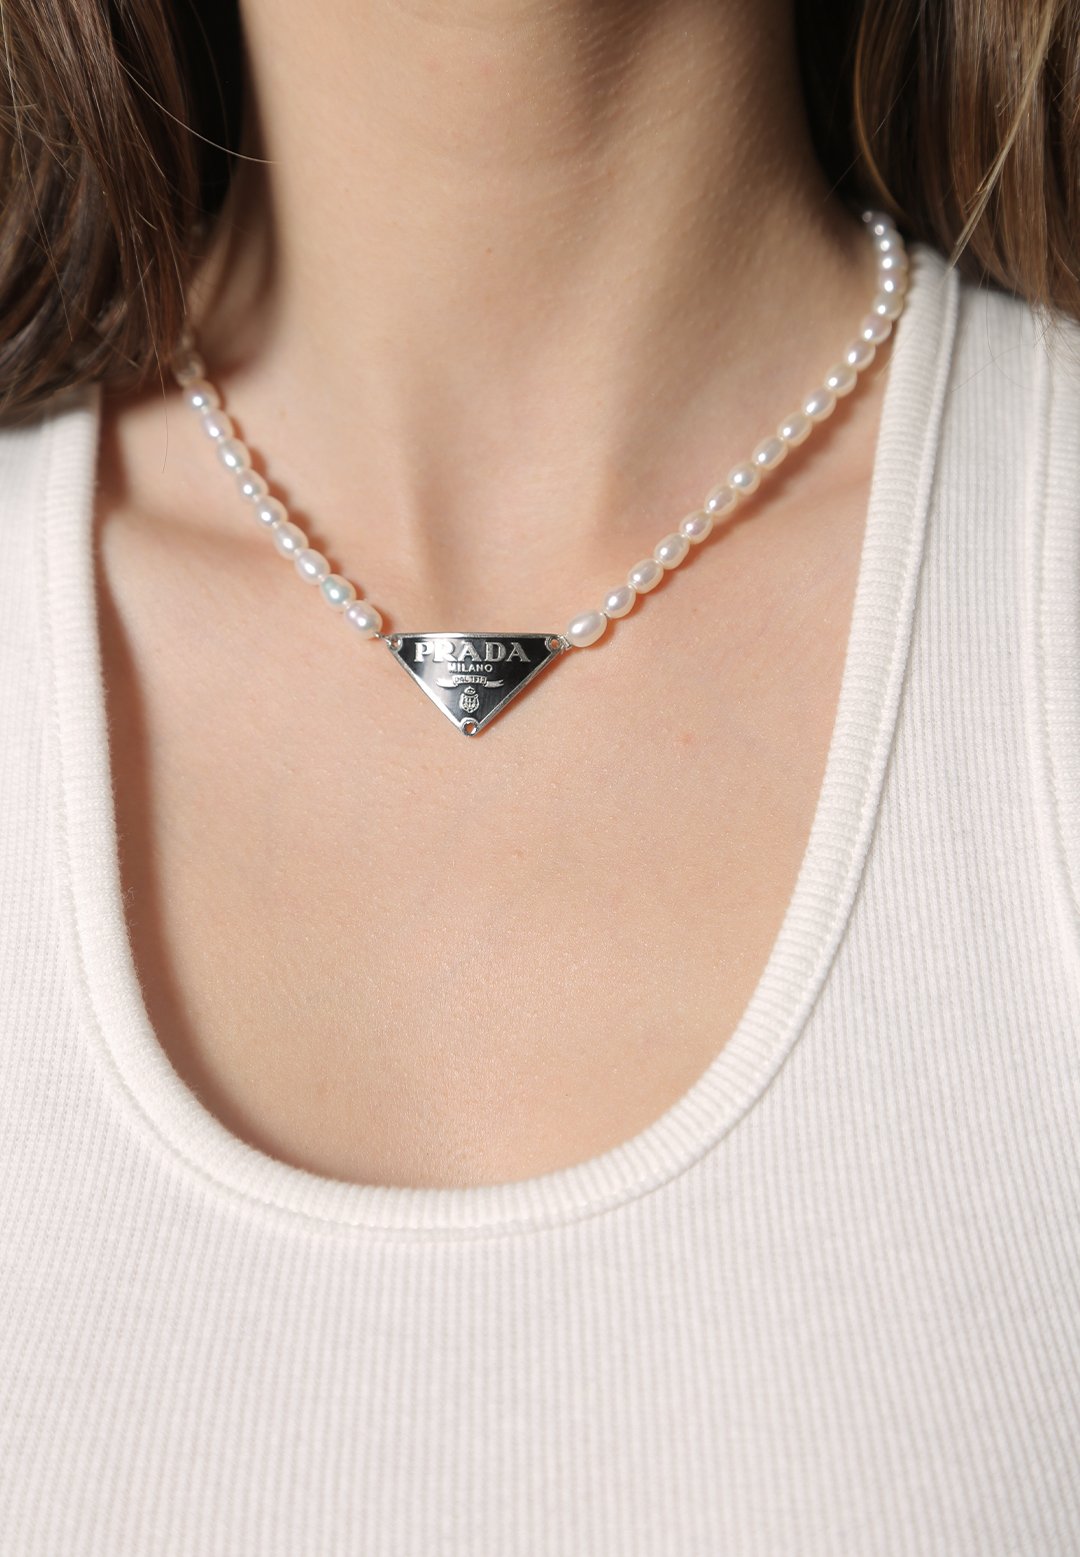 Prada | Jewelry | Custom White Prada Logo Charm Necklace | Poshmark